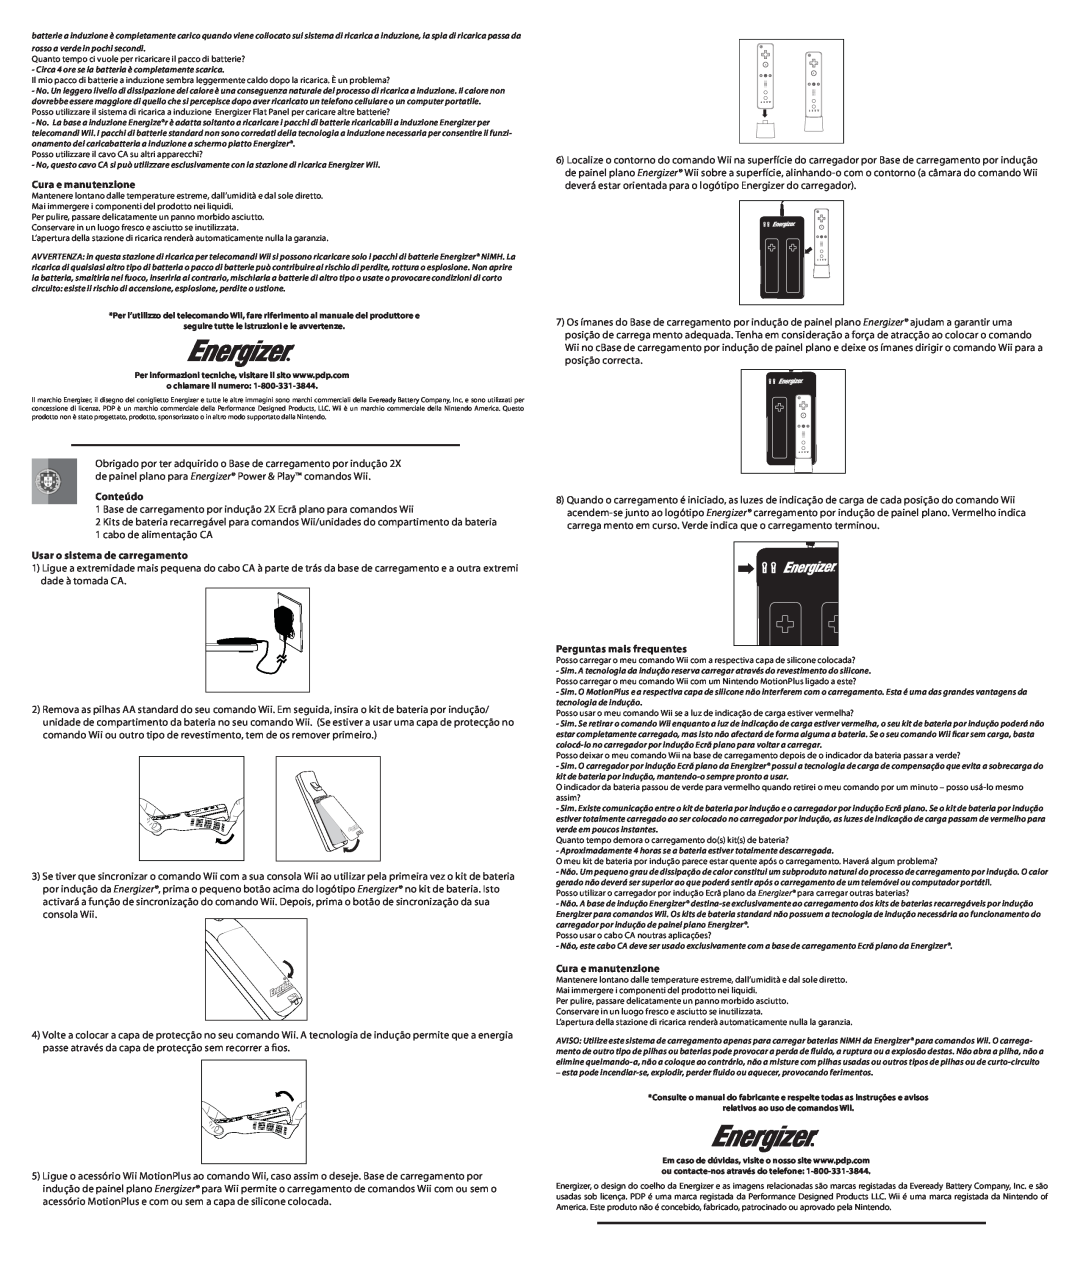 PDP PL-7581 manual Cura e manutenzione, Conteúdo, Usar o sistema de carregamento, Perguntas mais frequentes 